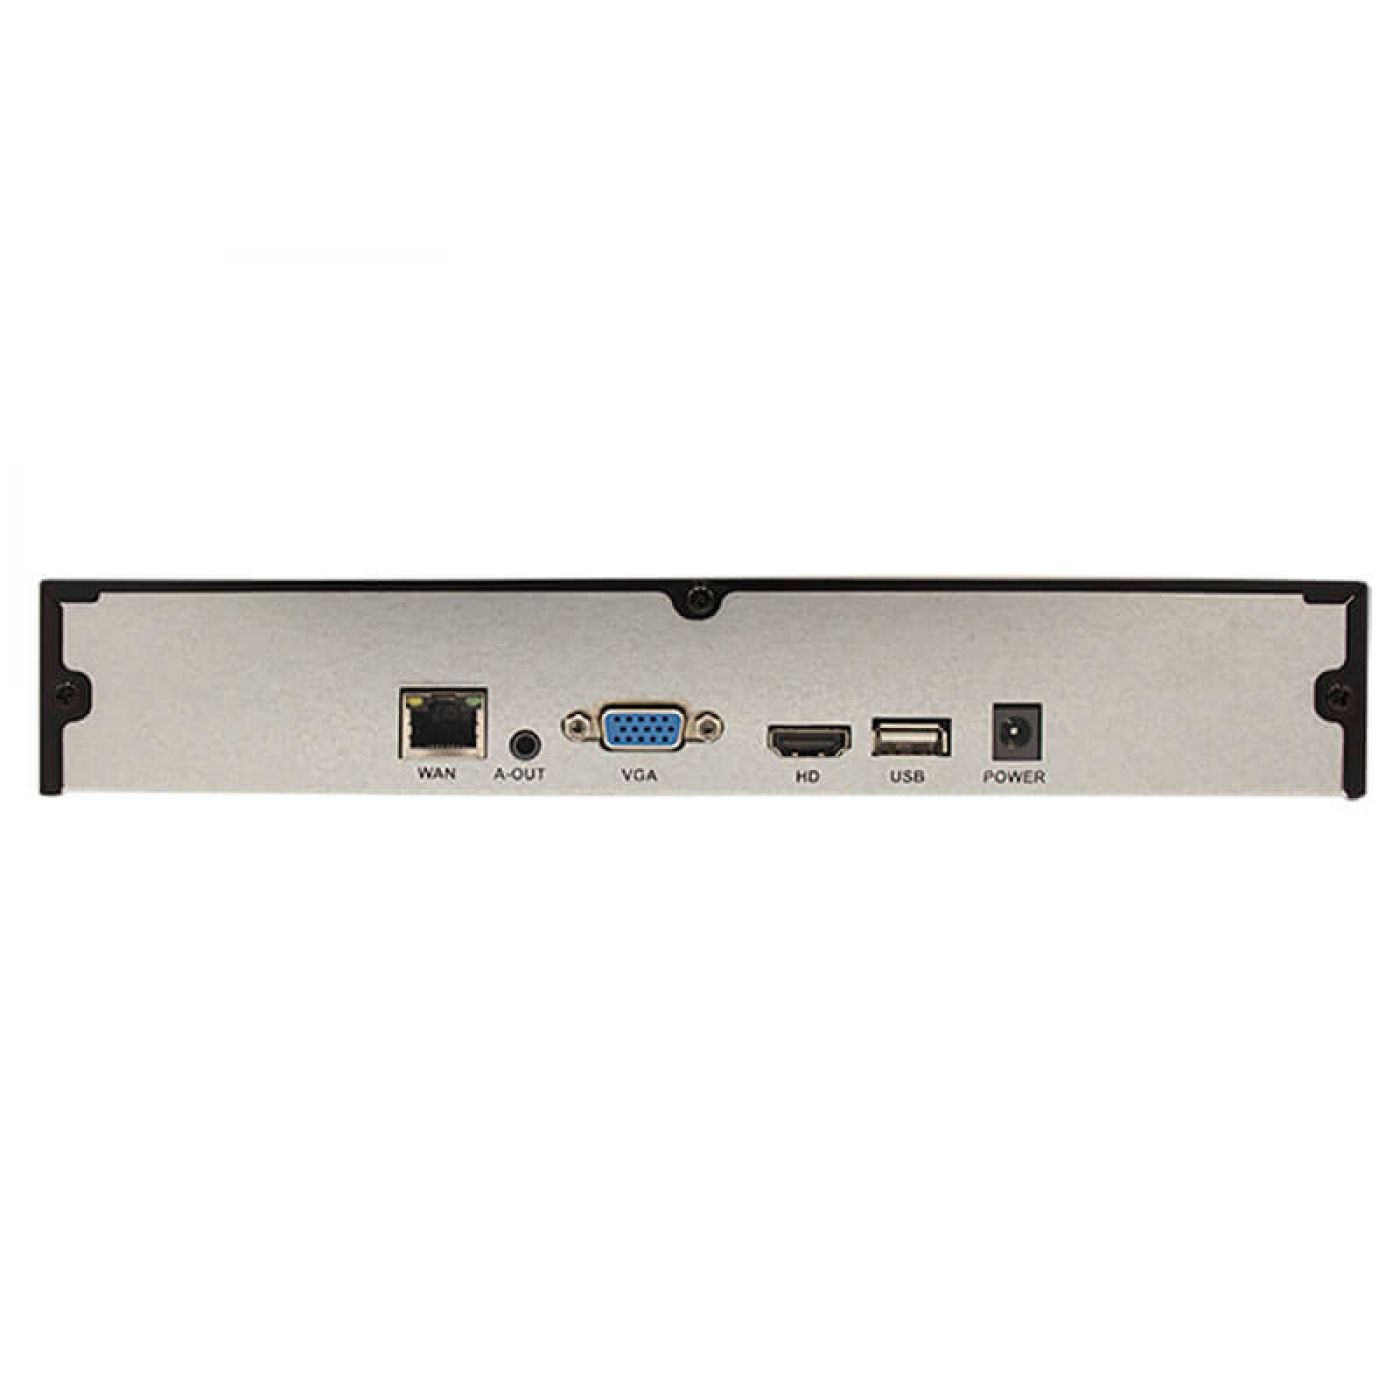 16-канальный IP видеорегистратор Mosvitec 16C-IP500